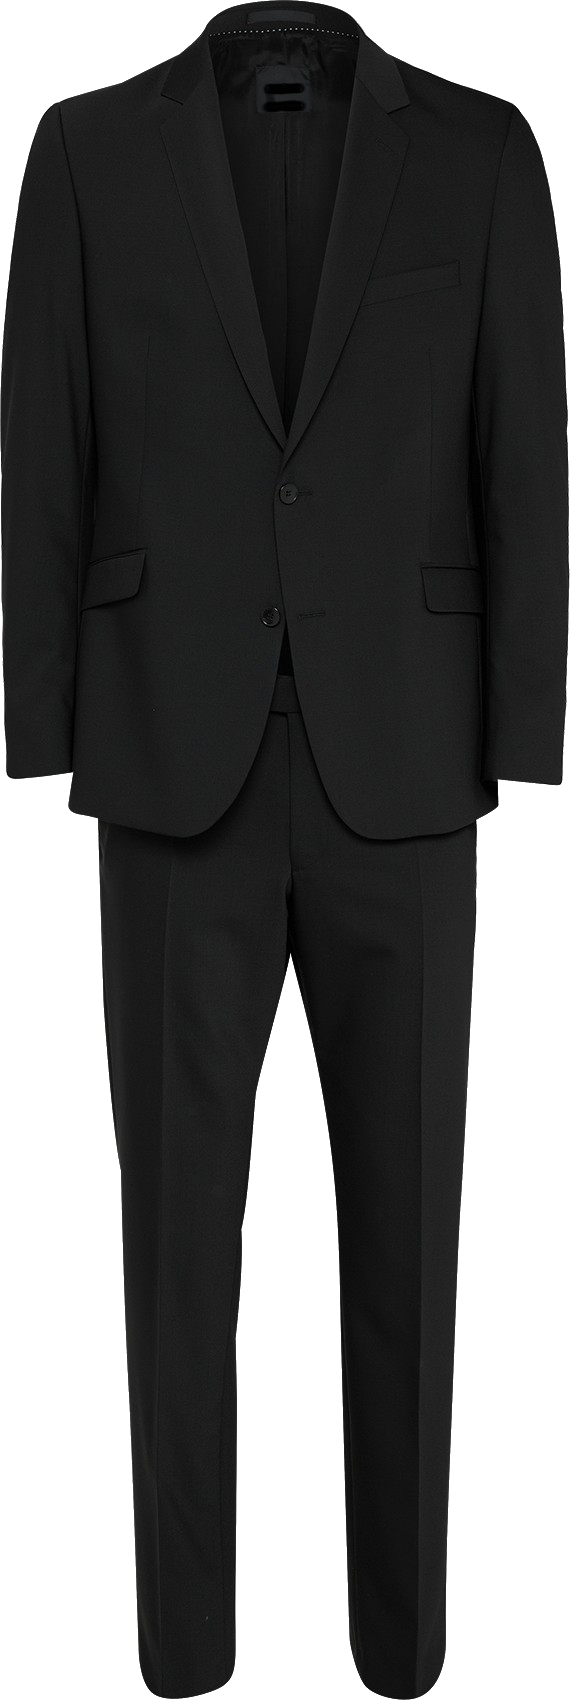 schwarze Anzug für Männer